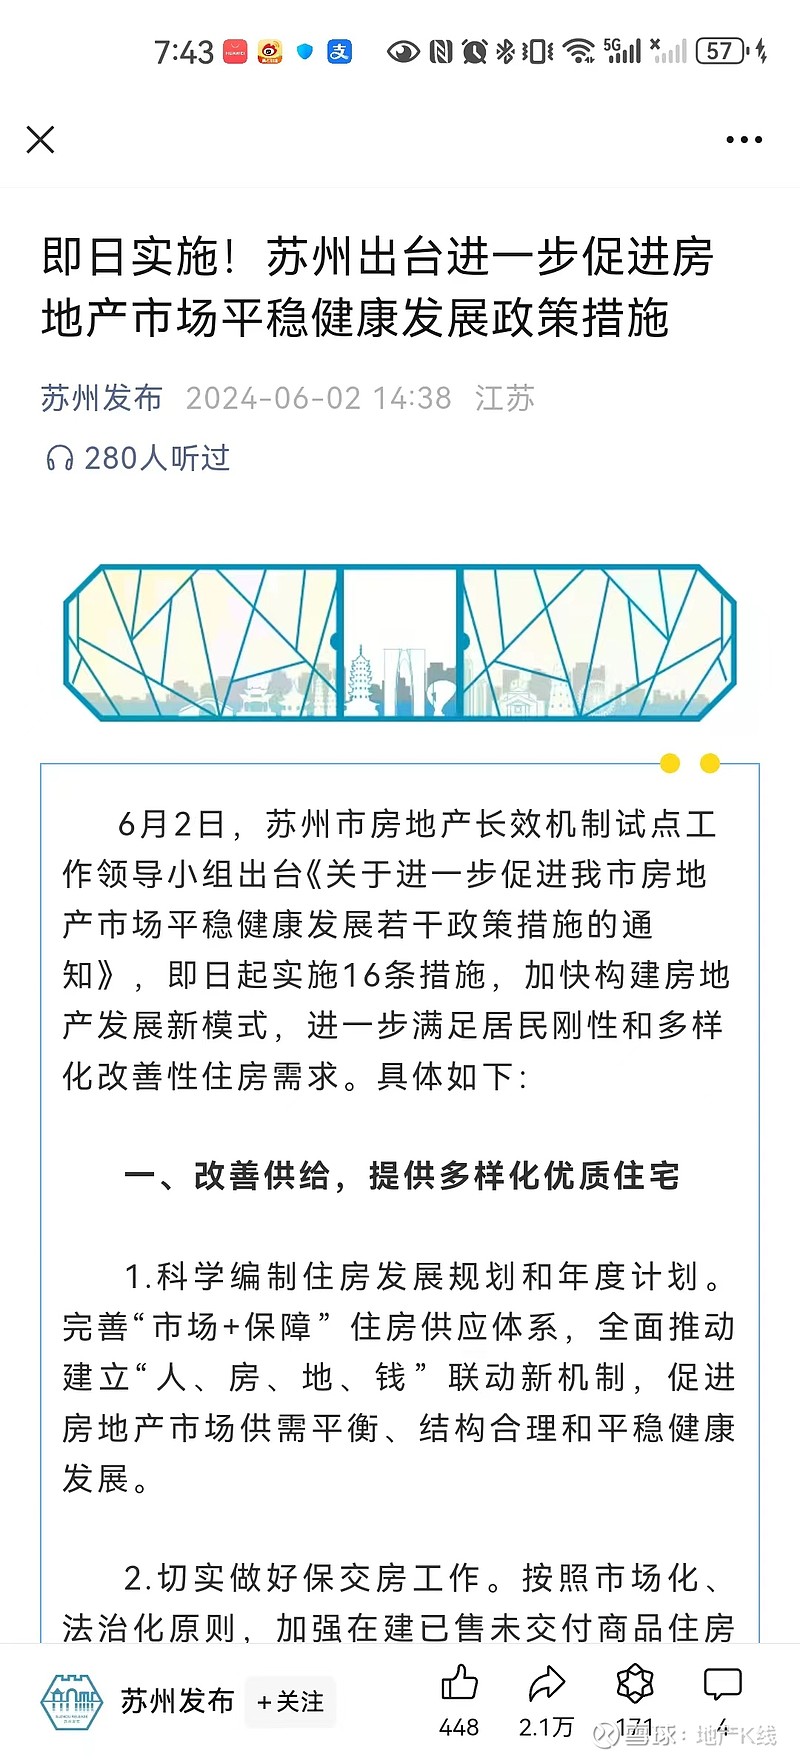 乐居财经 张林霞6日2日,据苏州发布公众号消息,苏州市房地产长效